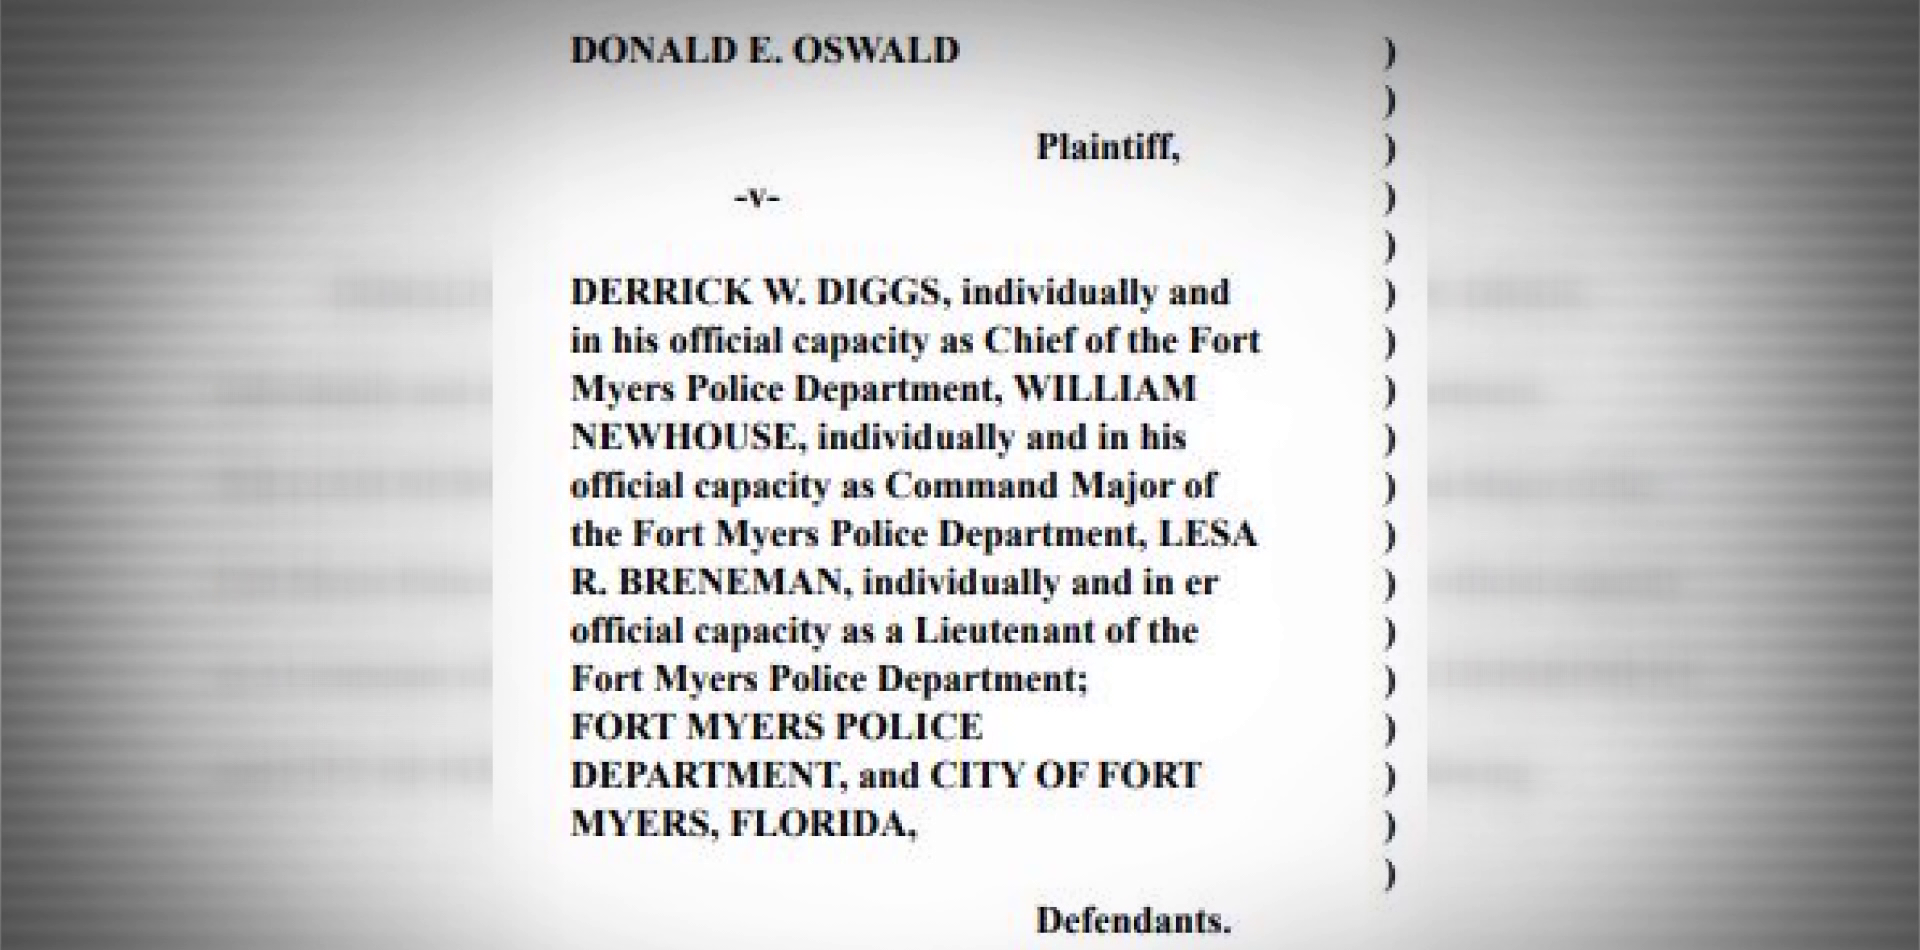 Oswald lawsuit against FMPD